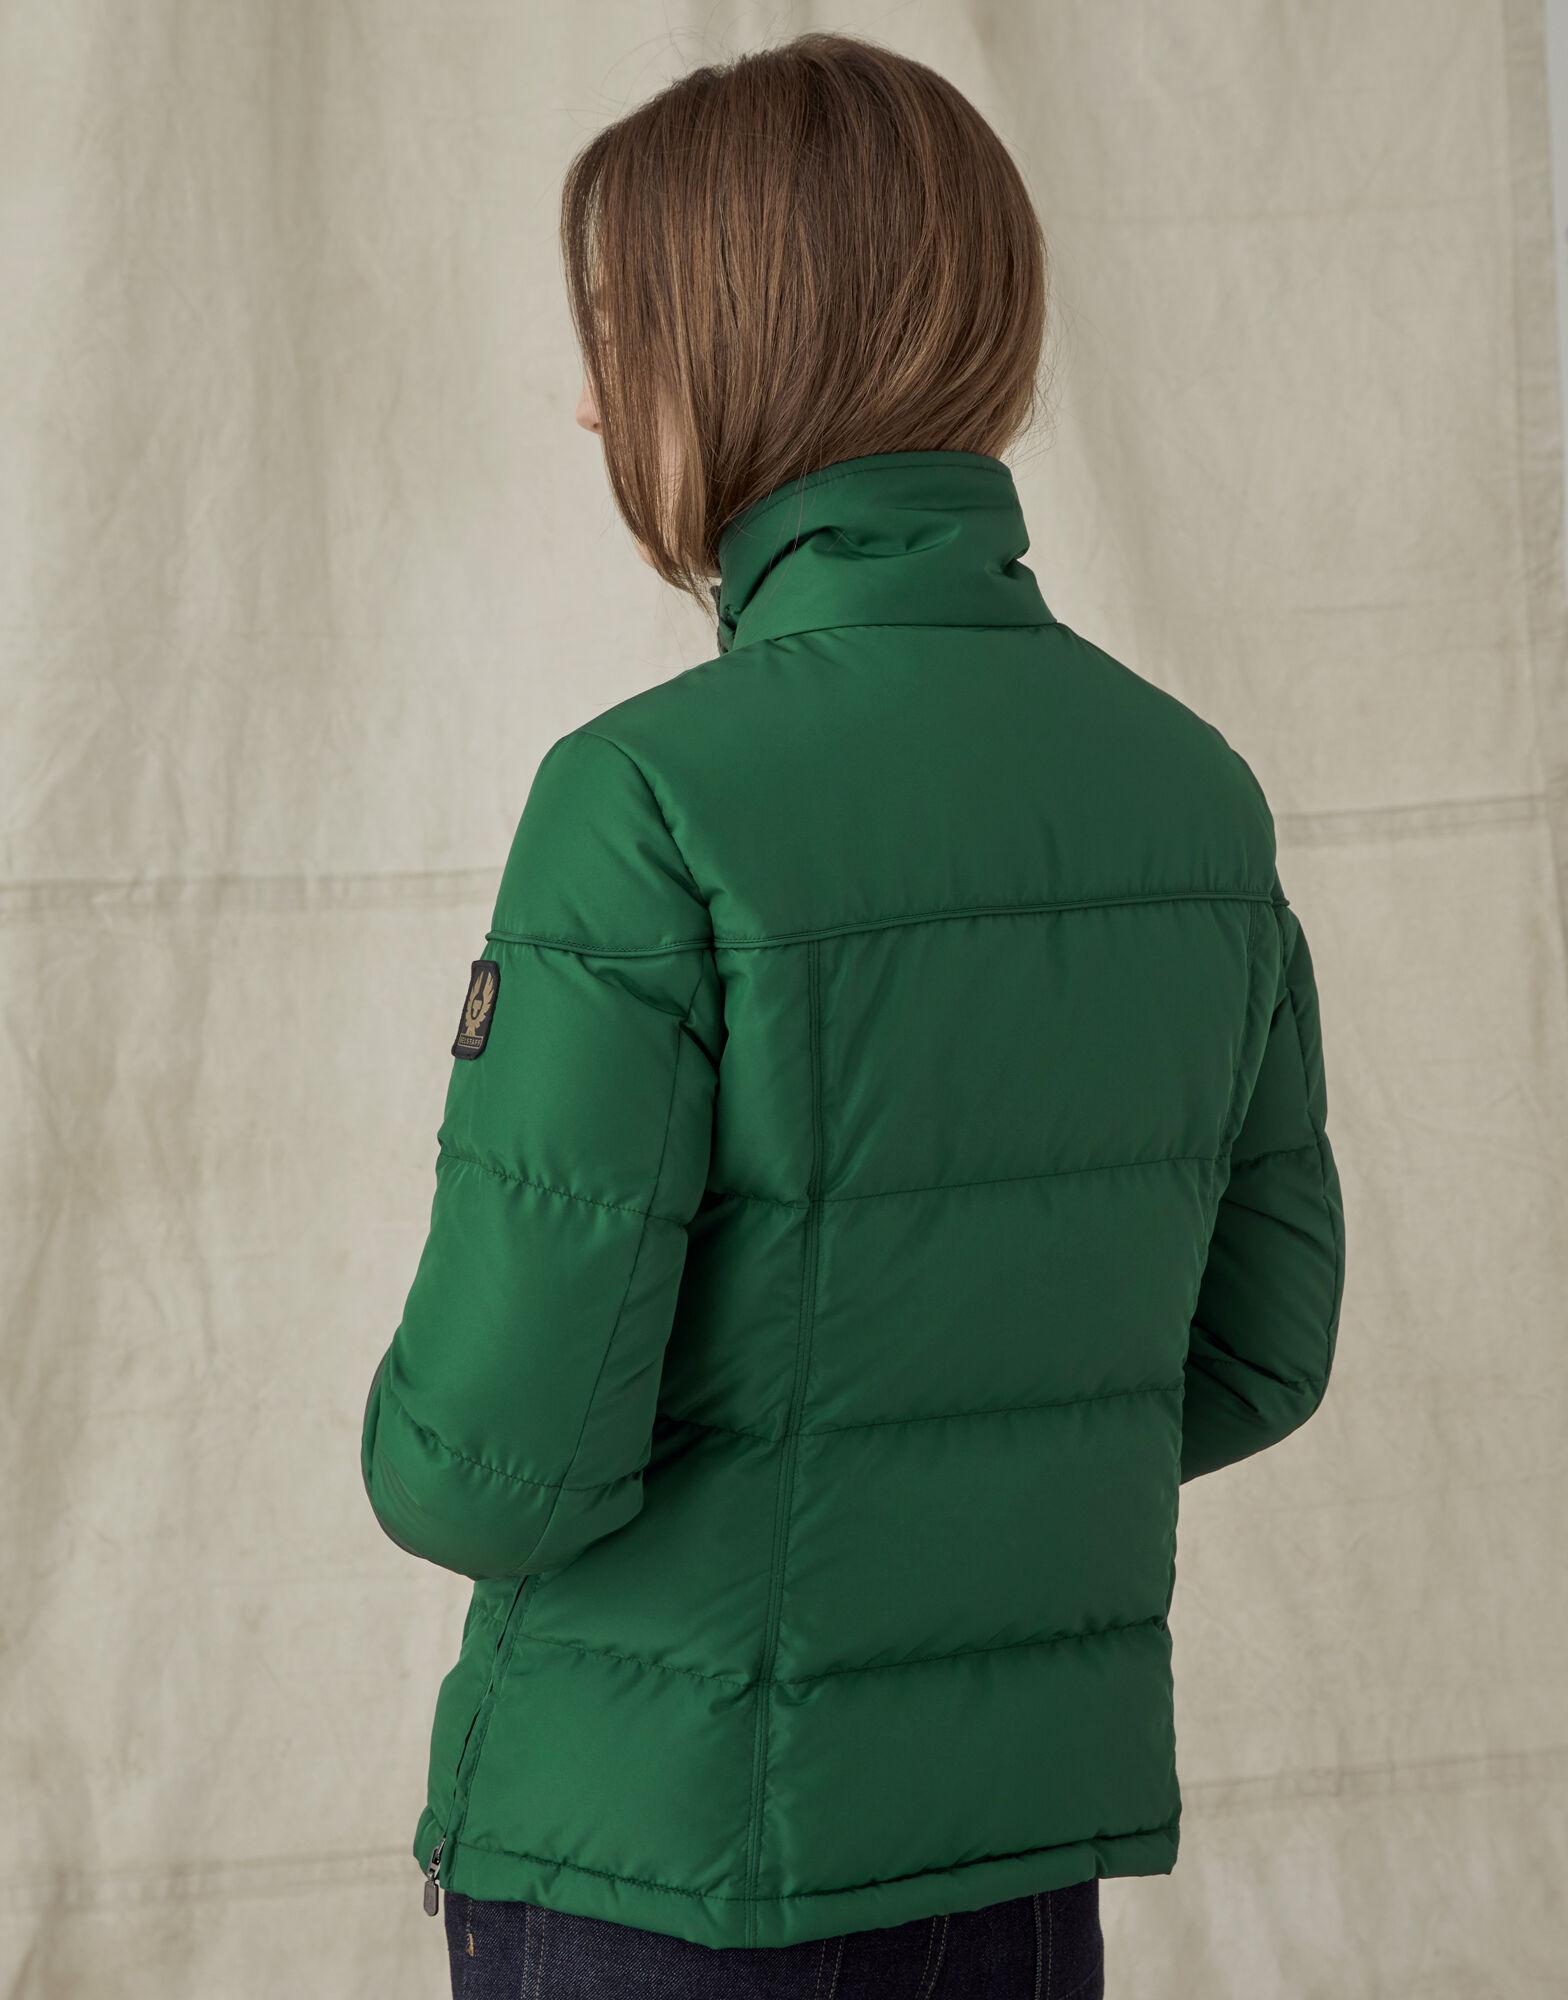 Belstaff Synthetic Slope 2.0 Jacket in Green - Lyst